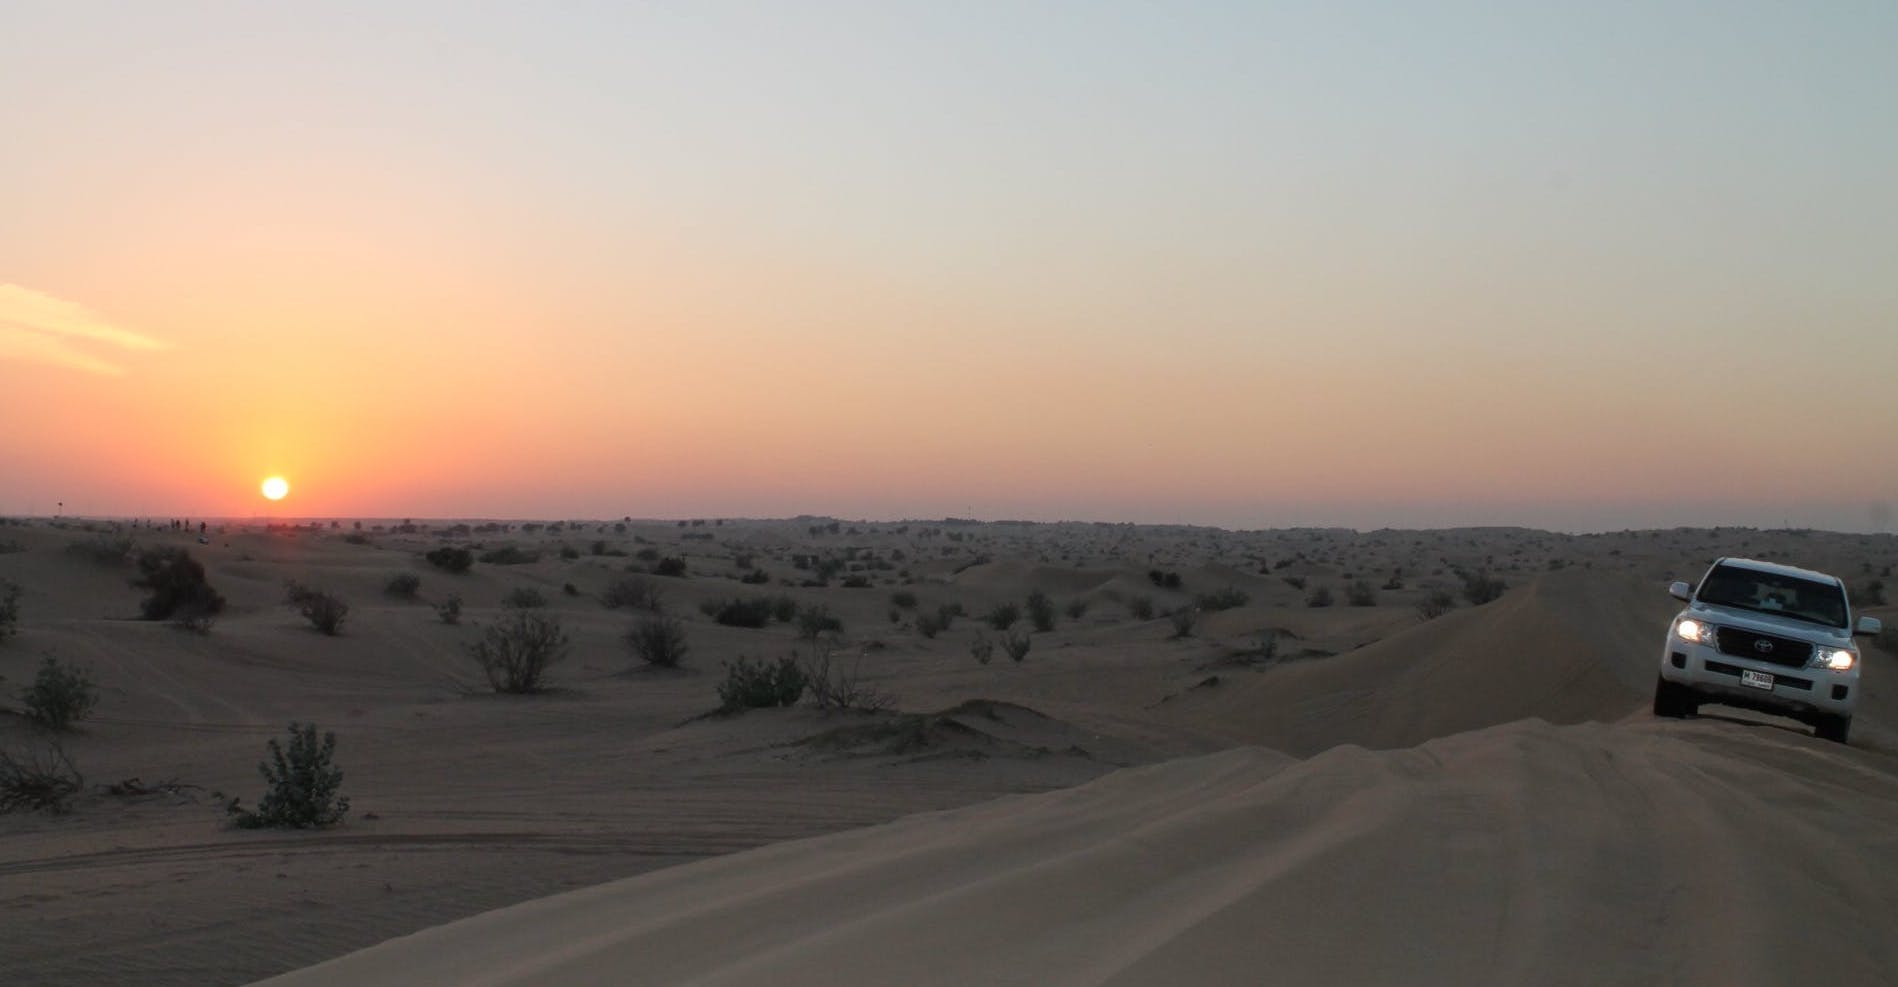 Woestijnsafari en diner vanuit Abu Dhabi